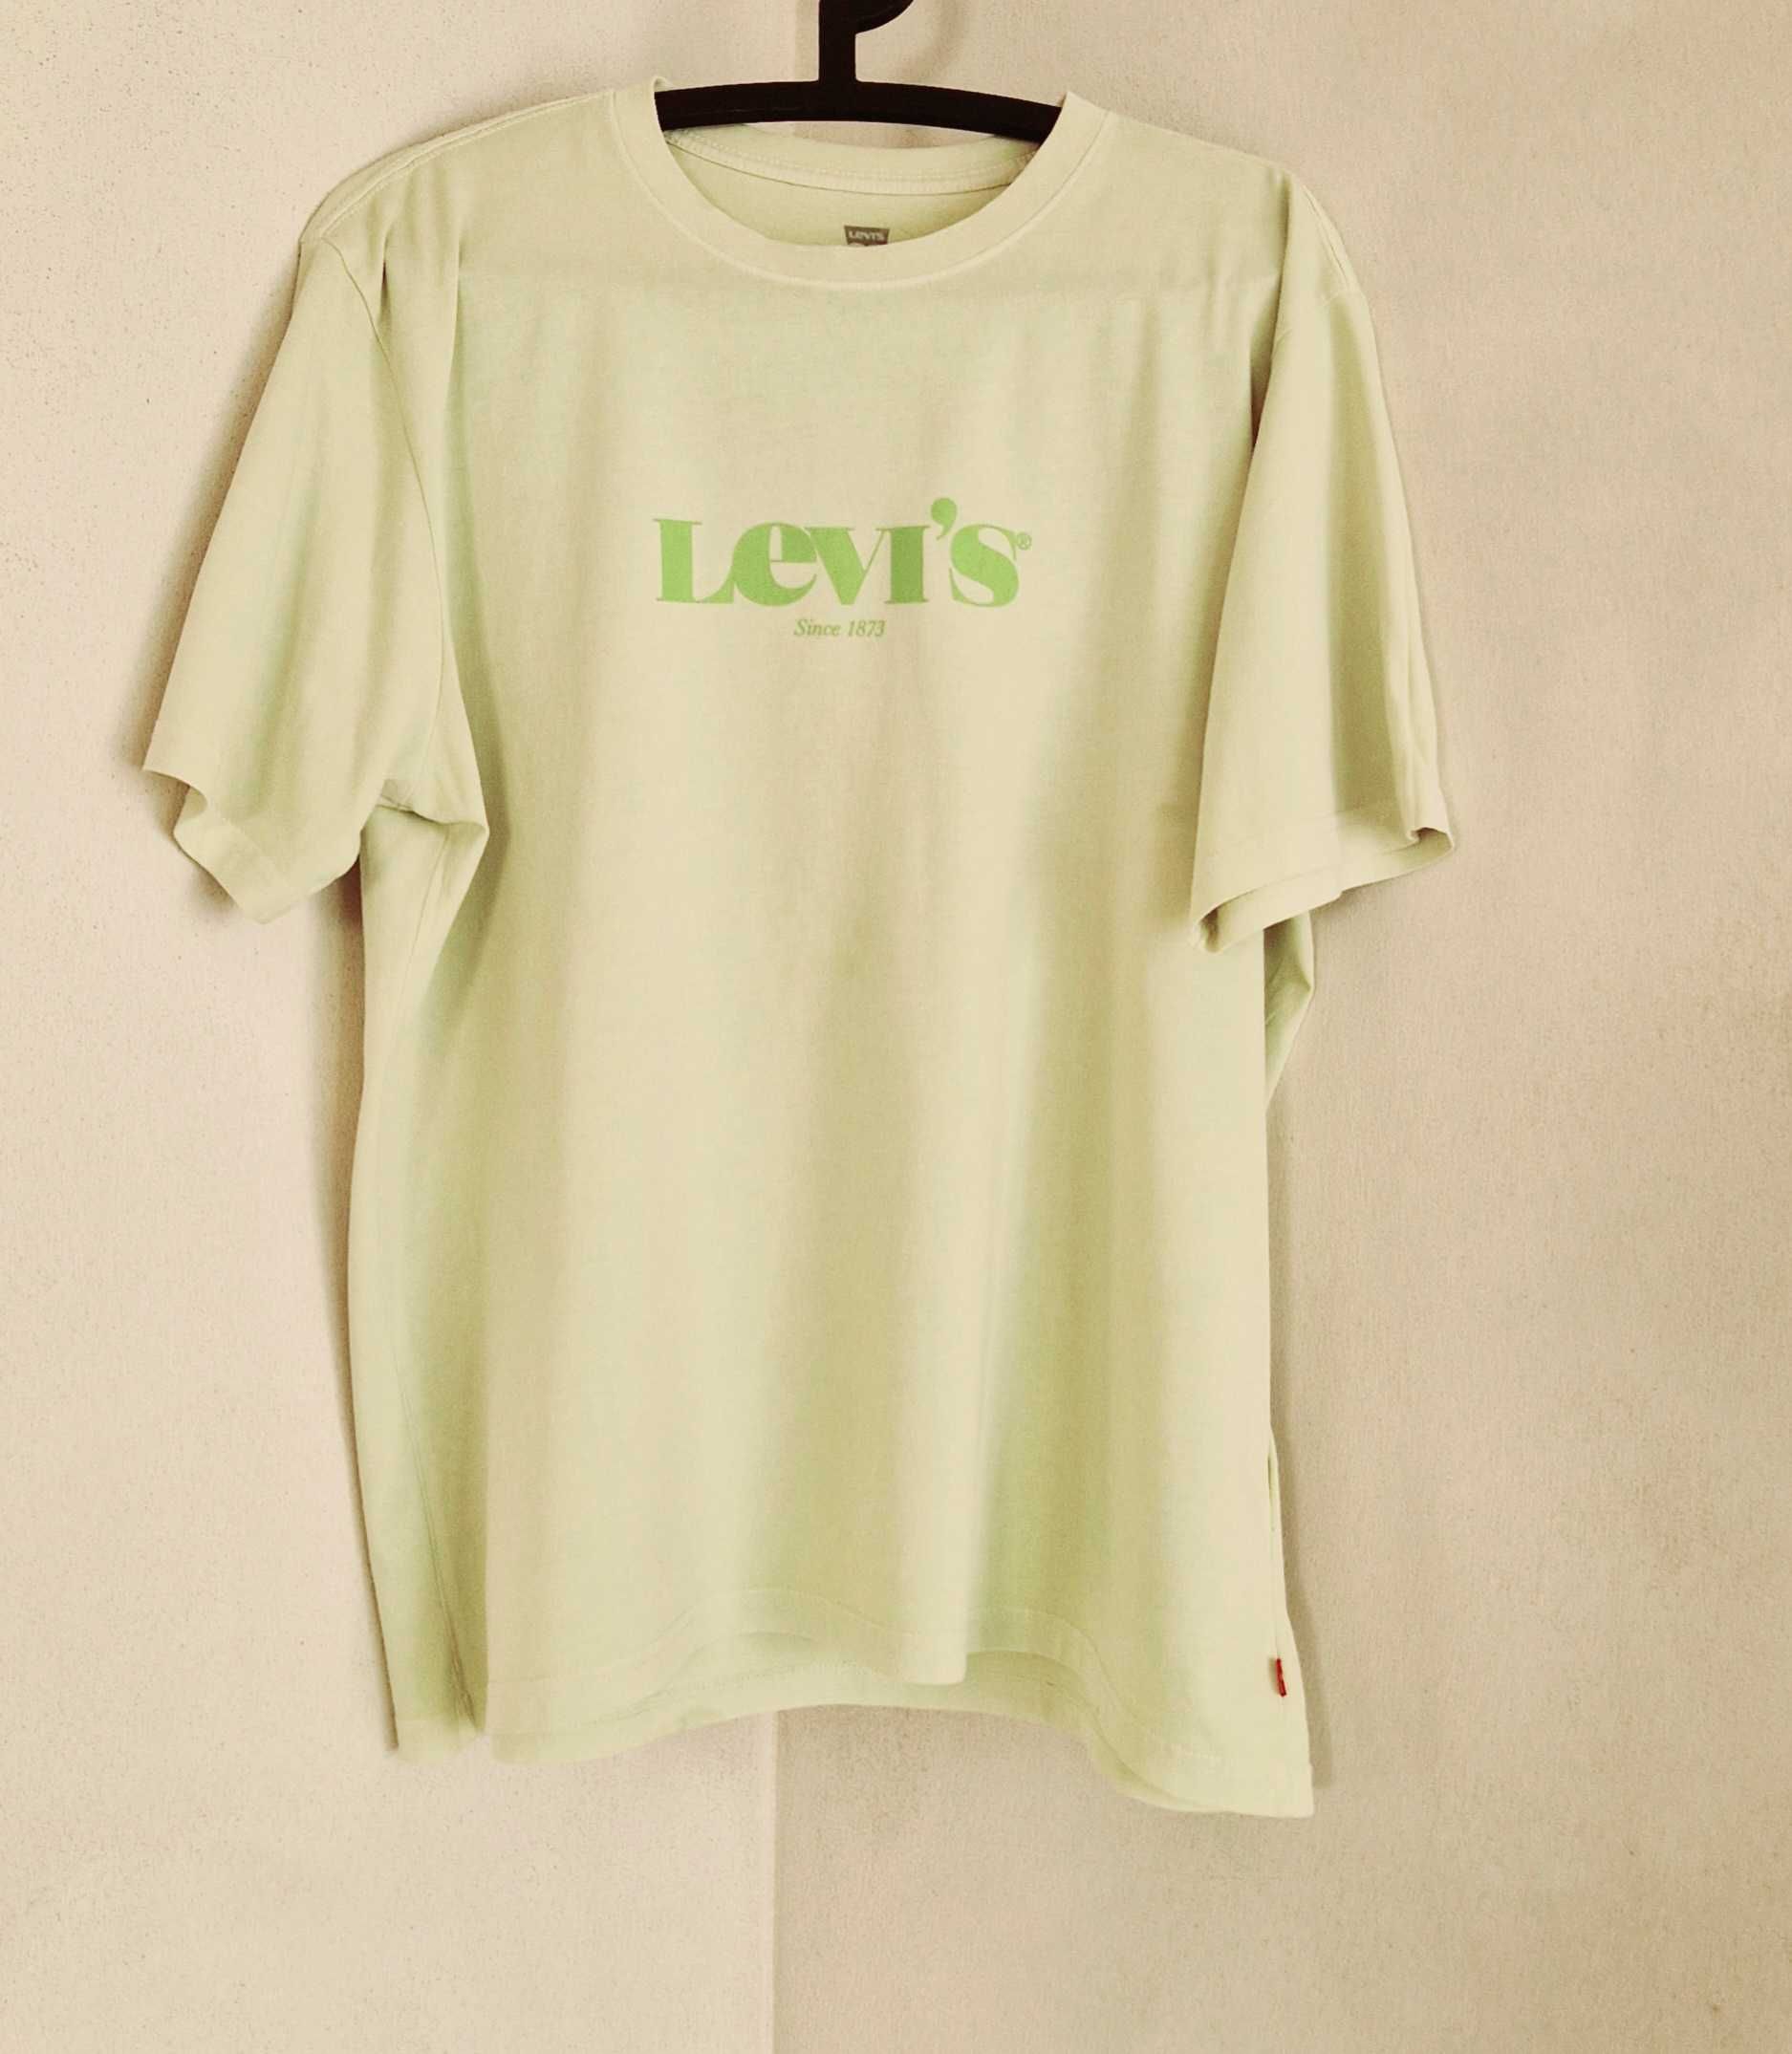 T-shirt koszulka podkoszulek męski relaxed fit LEVIS LEVI'S L